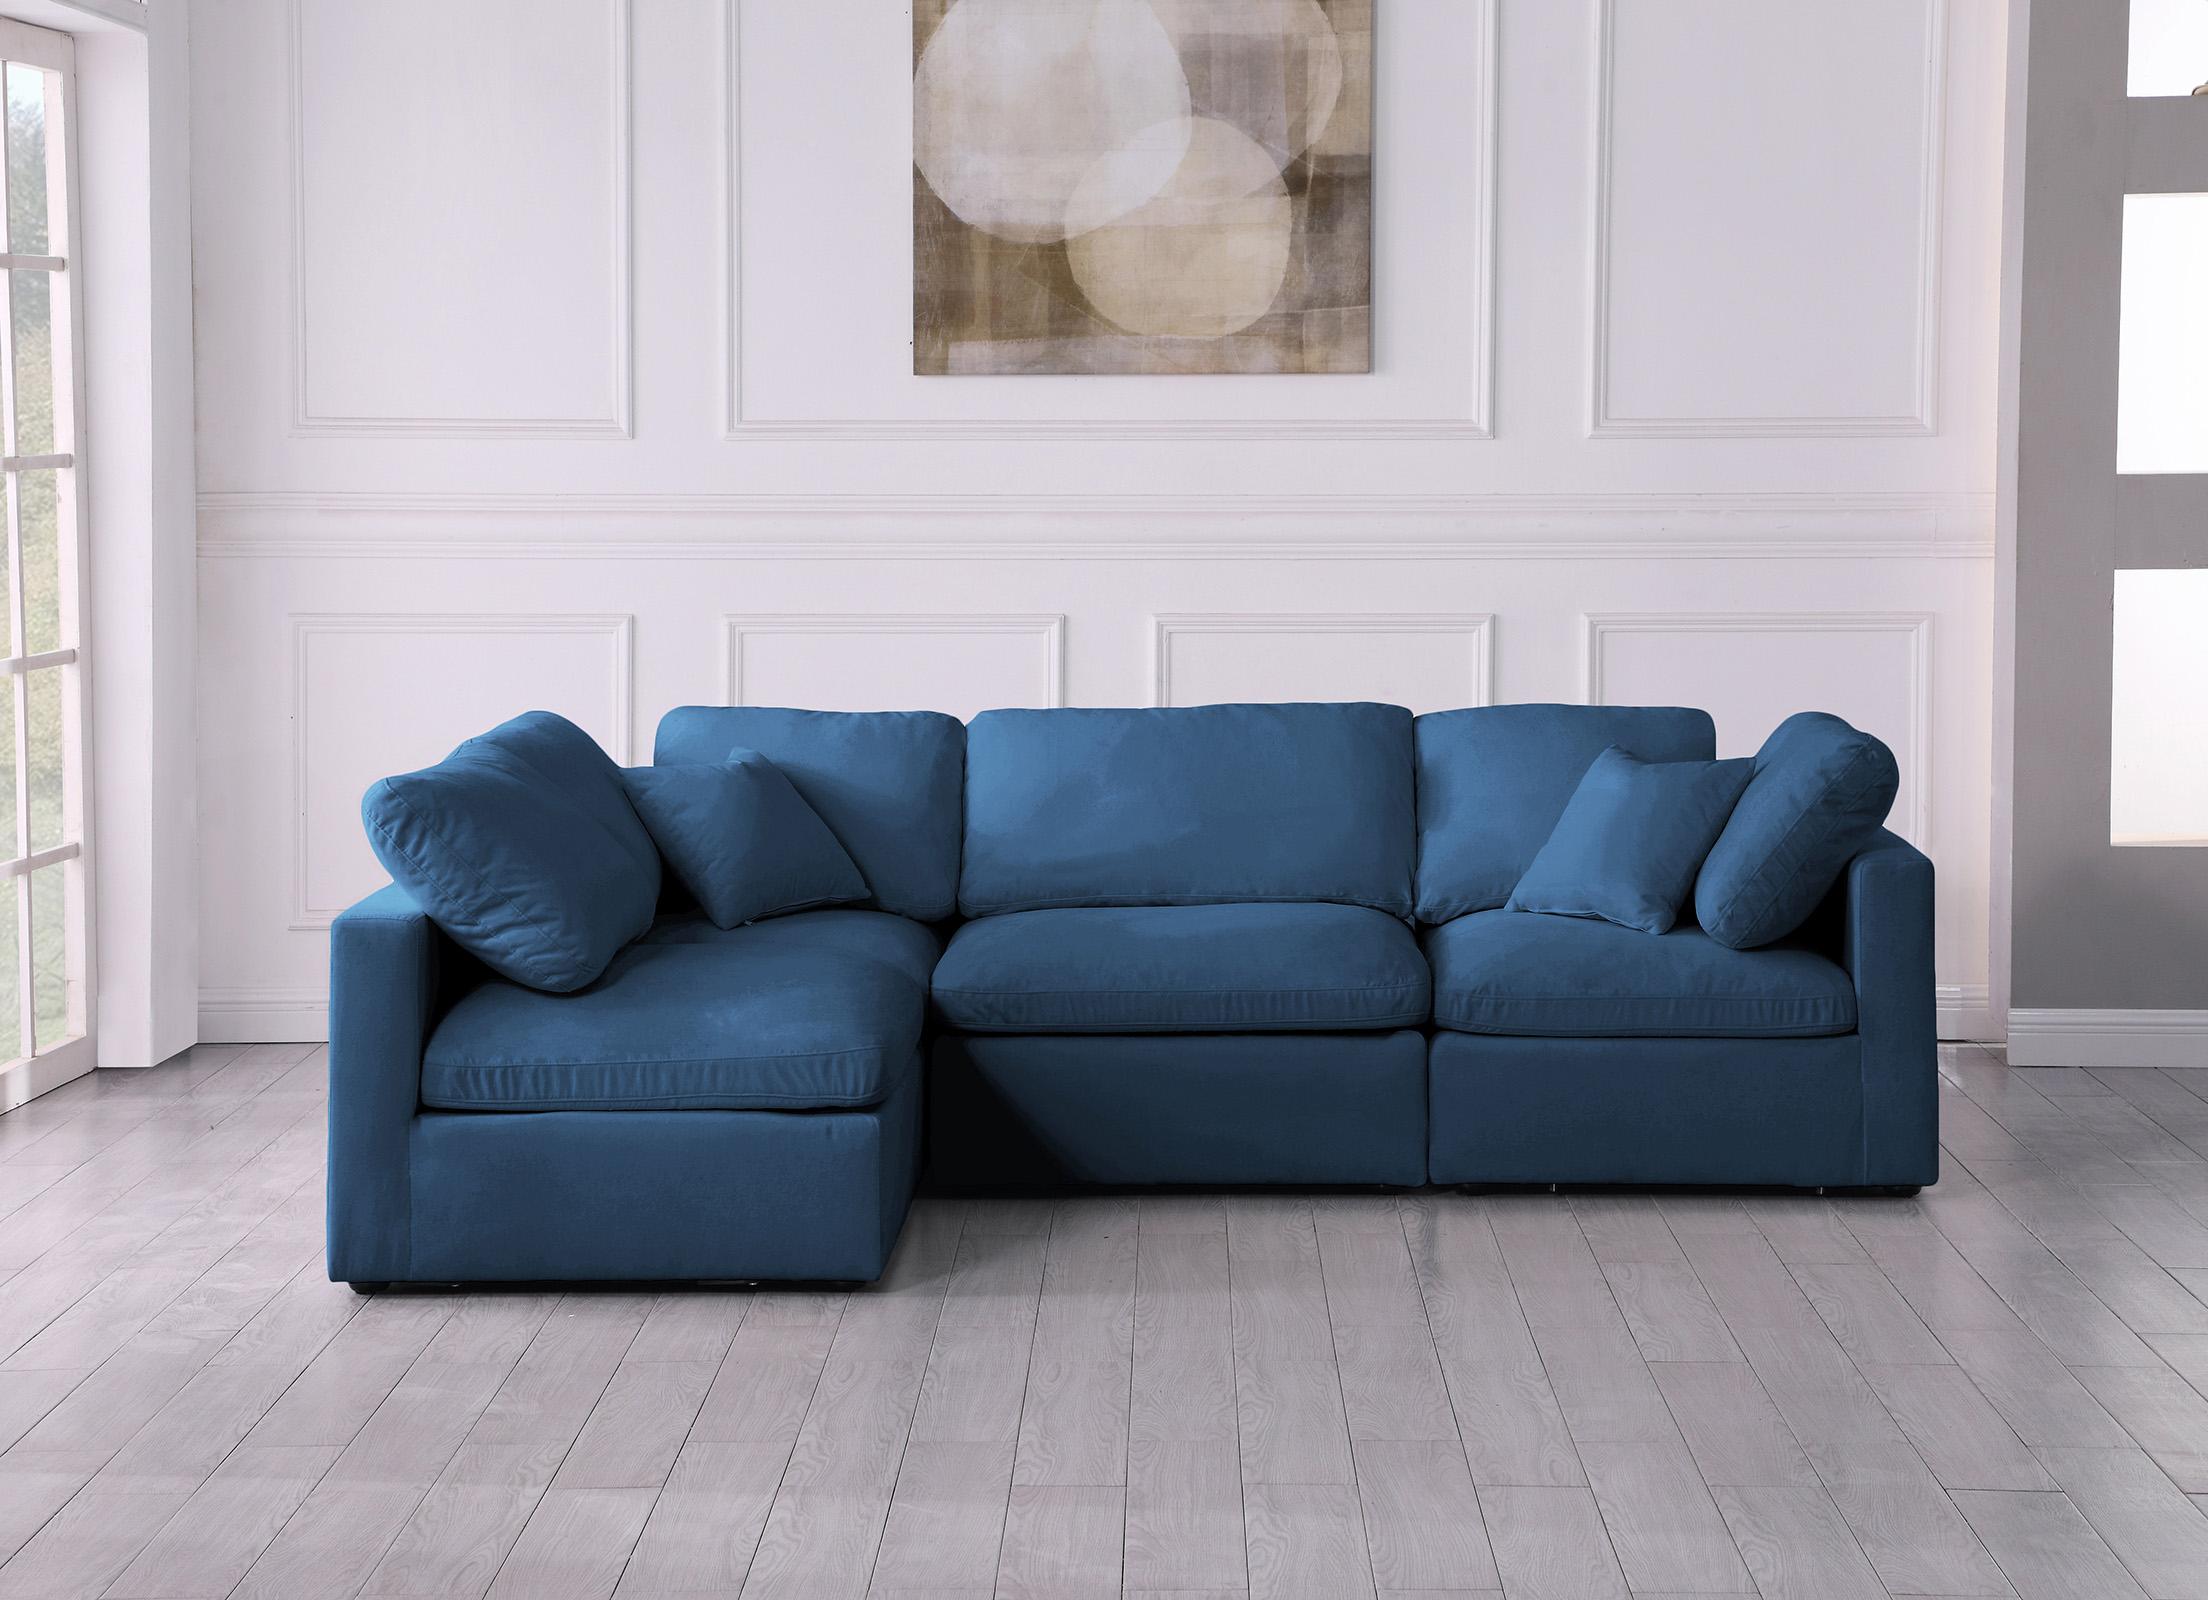 

        
Meridian Furniture 602Navy-Sec4B Modular Sectional Sofa Navy Fabric 094308257921
